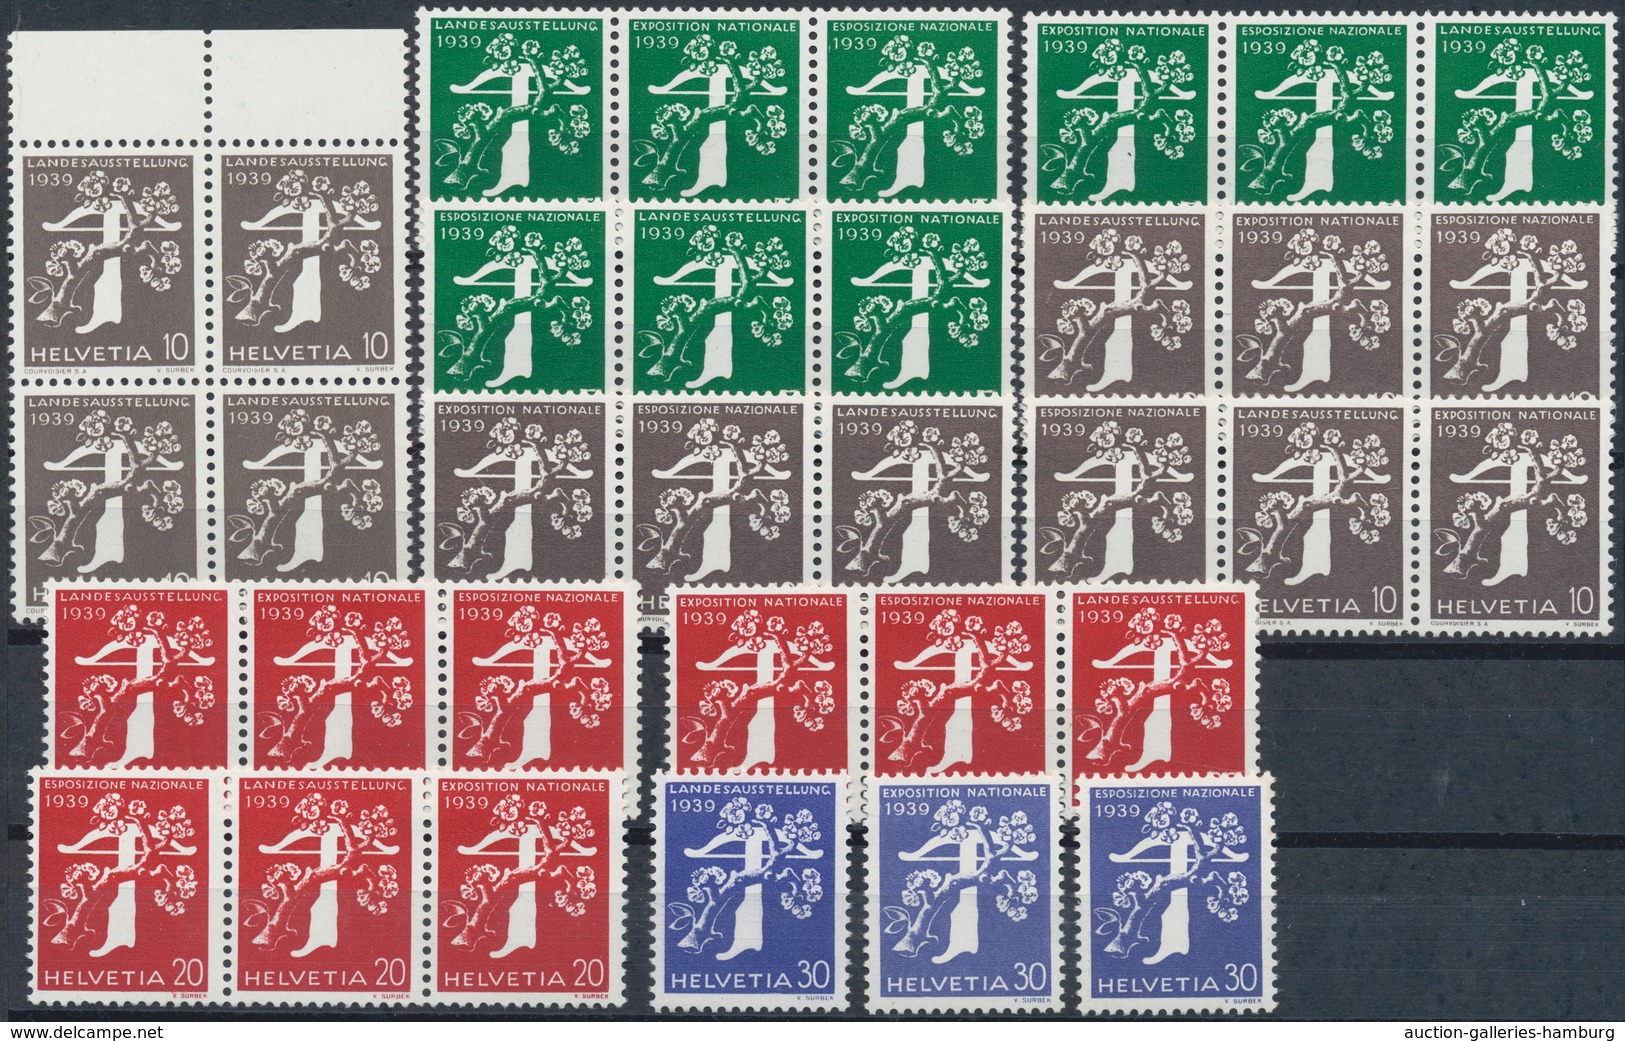 Schweiz: 1938/1995, Briefmarken-/Landesausstellungen, saubere Partie mit postfrischen Ausgaben und B